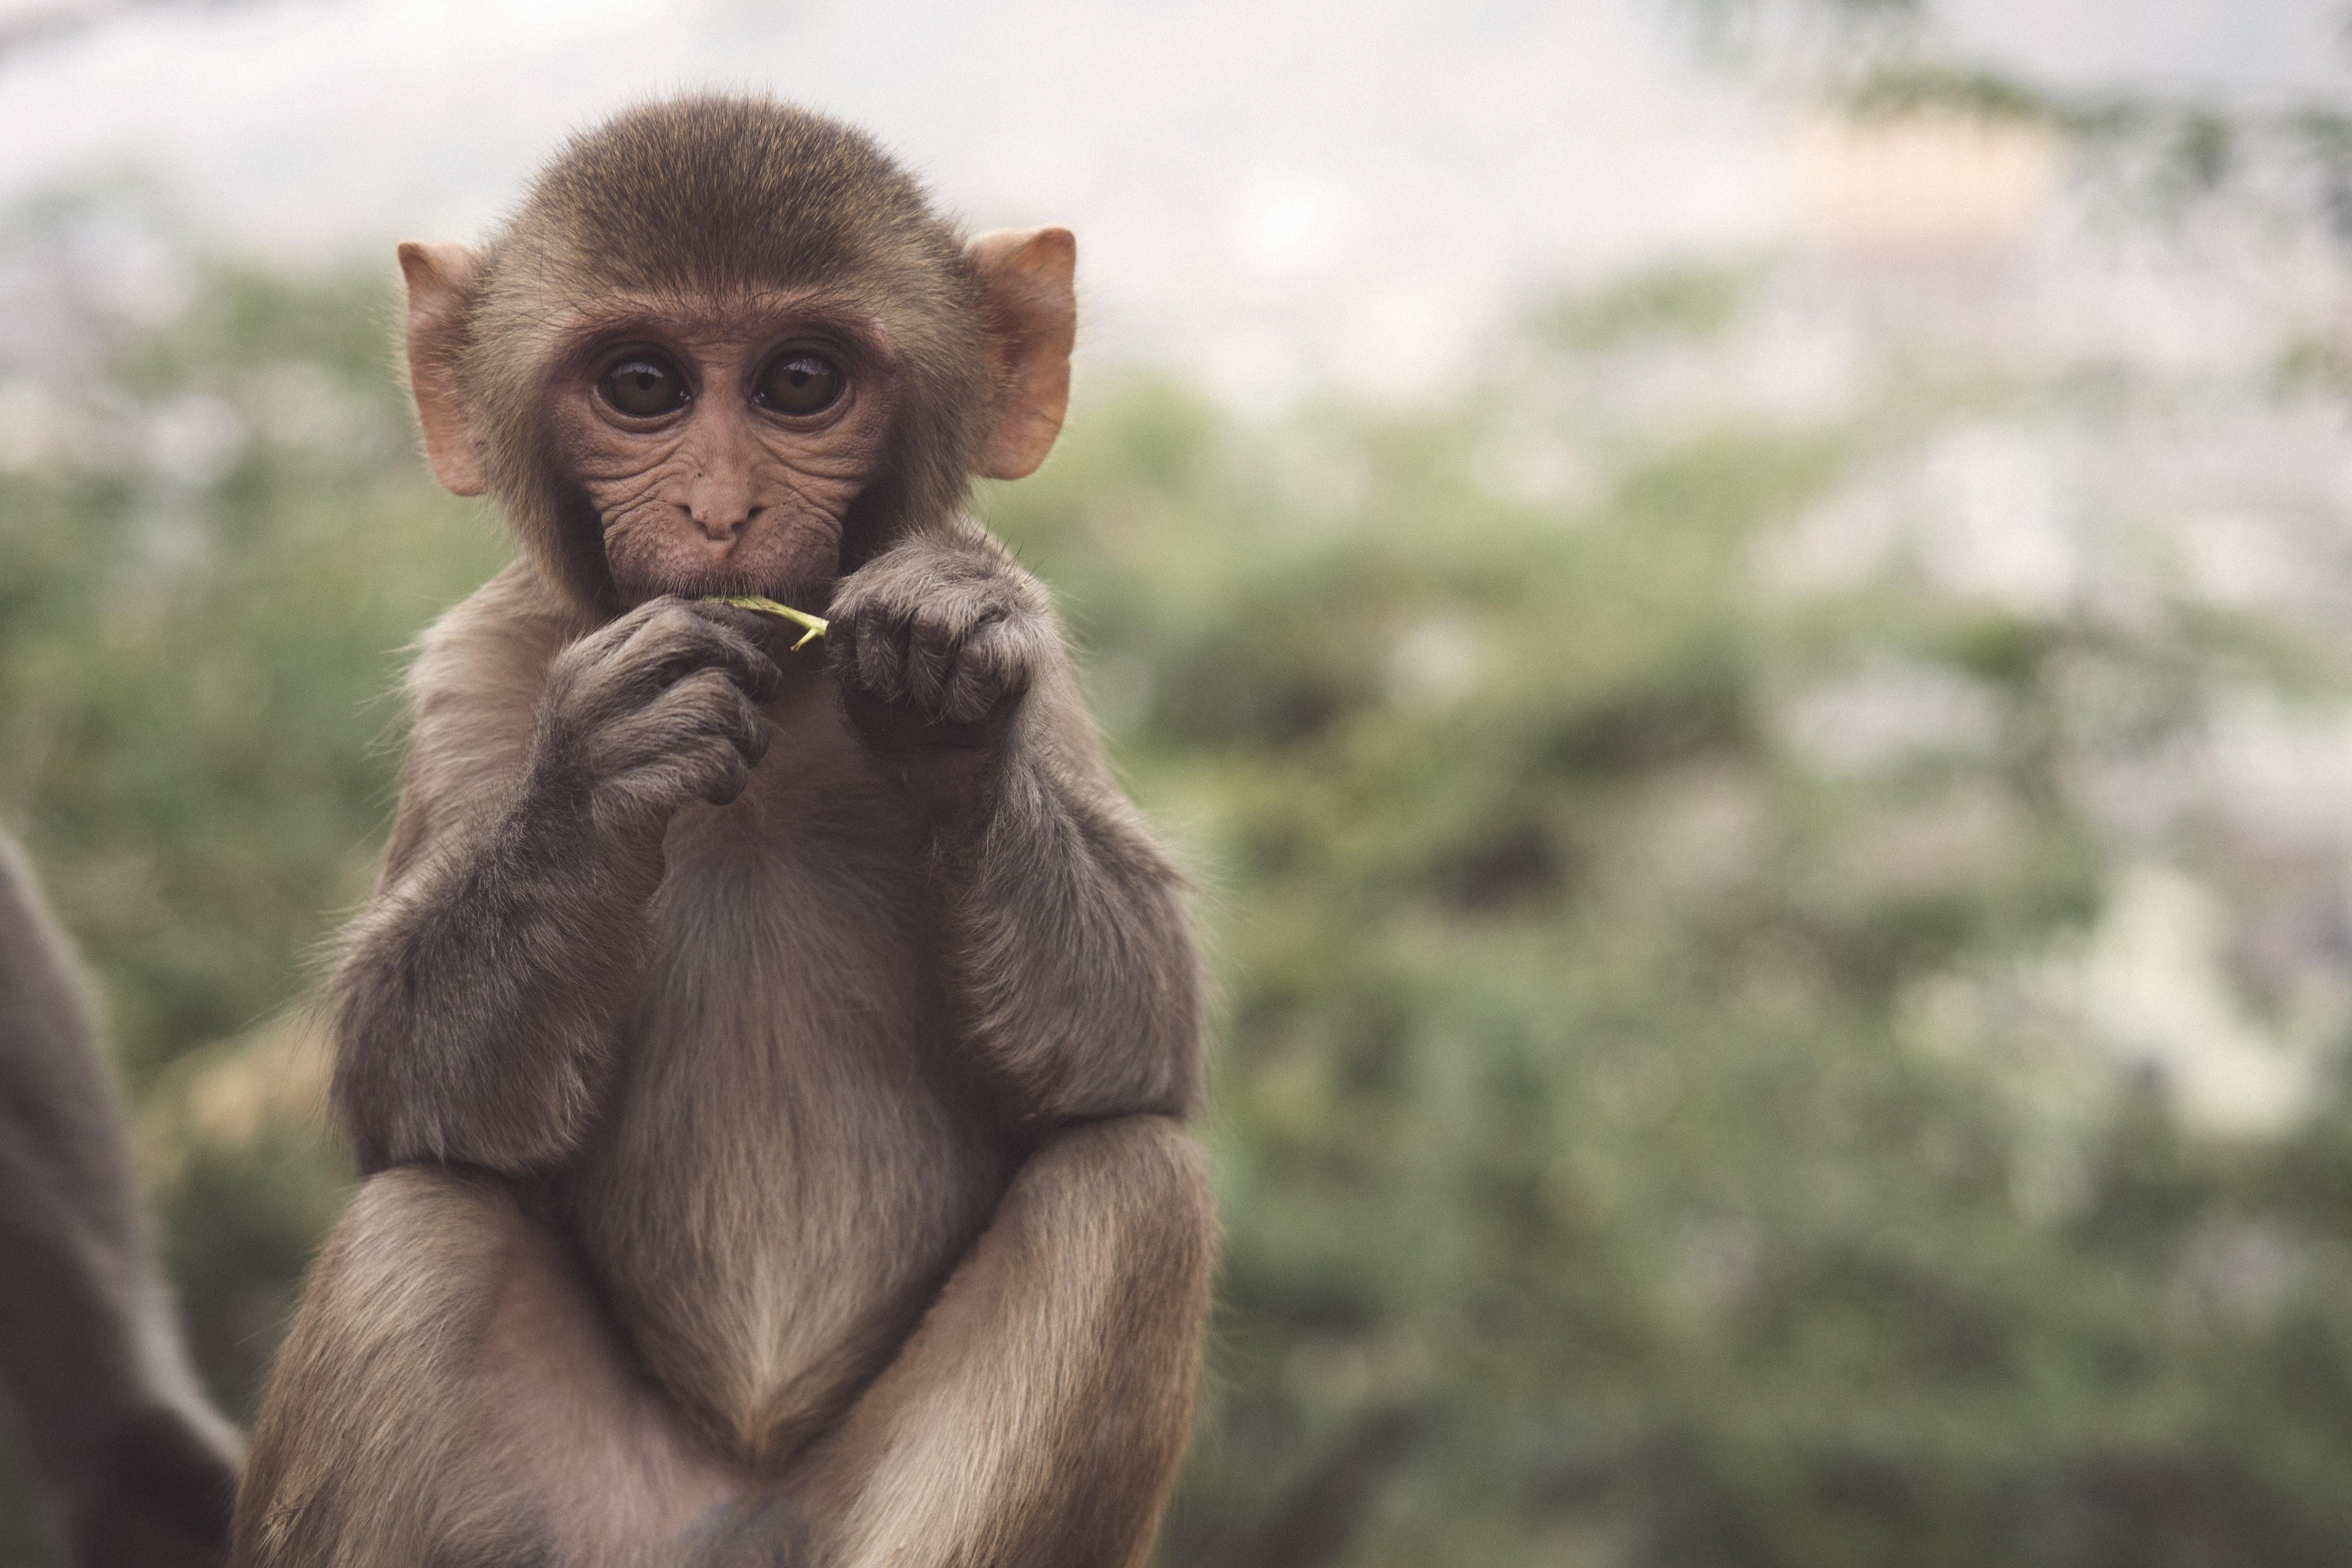 Імунітет проти ВІЛ та Еболи: у мавп знайшли ген, який зупиняє віруси - Здоровʼя 24